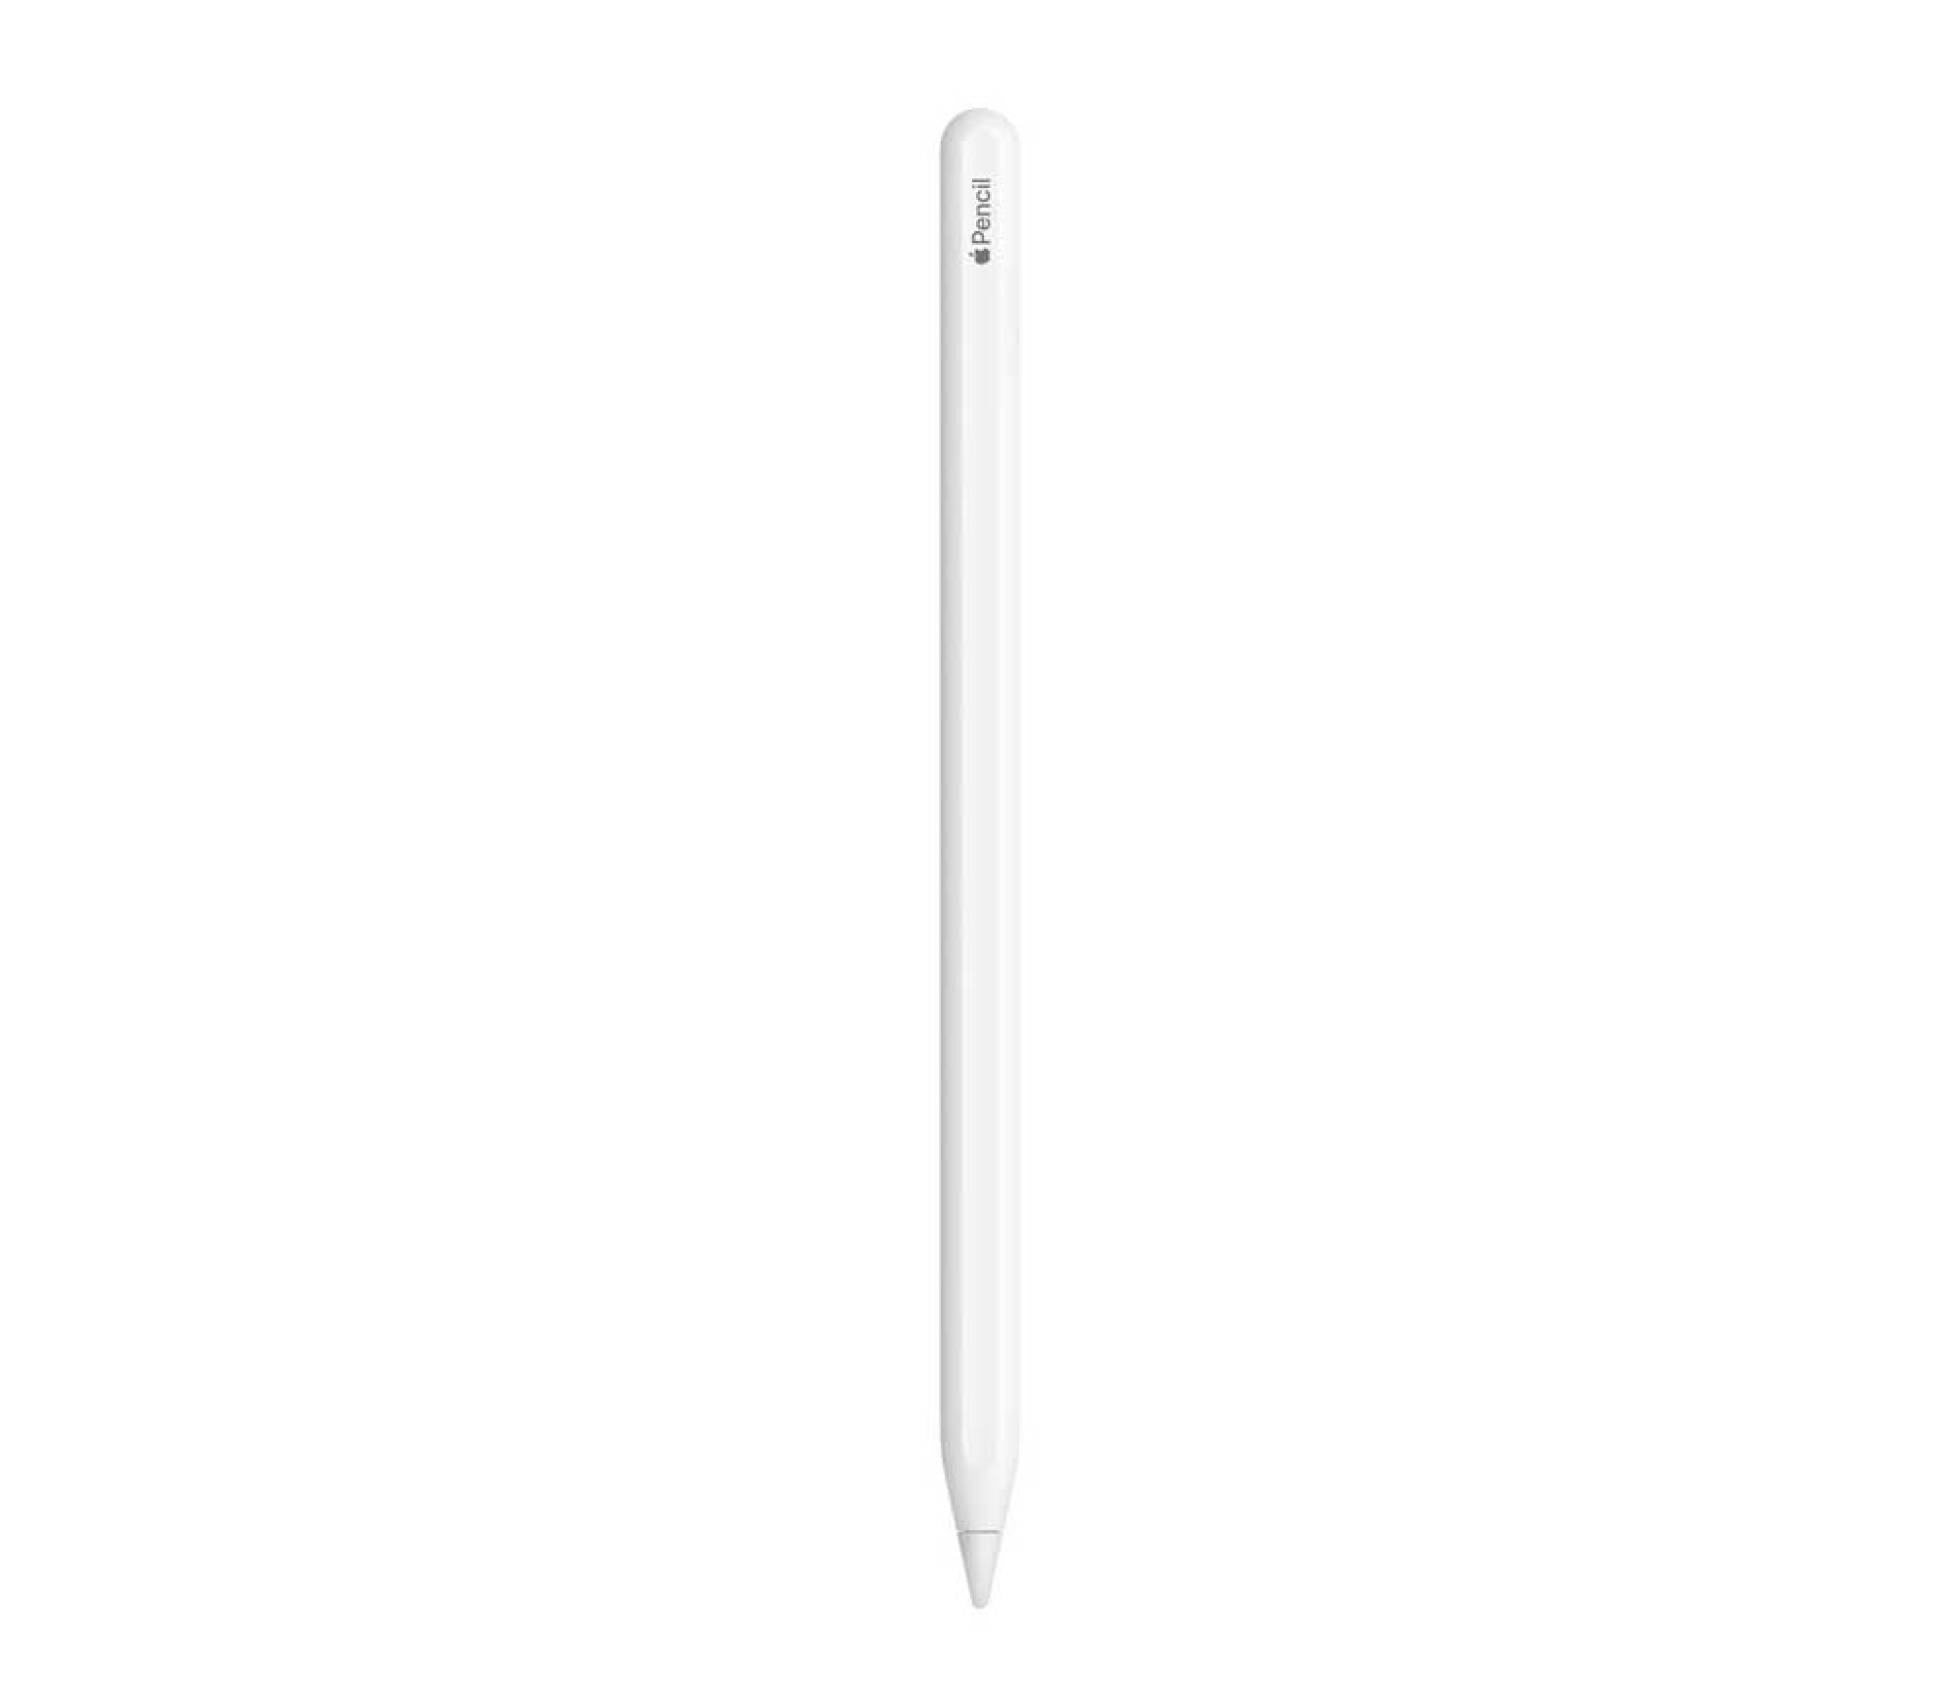 La ironía del Apple Pencil: el accesorio del que Jobs renegaba es ahora la  excusa para